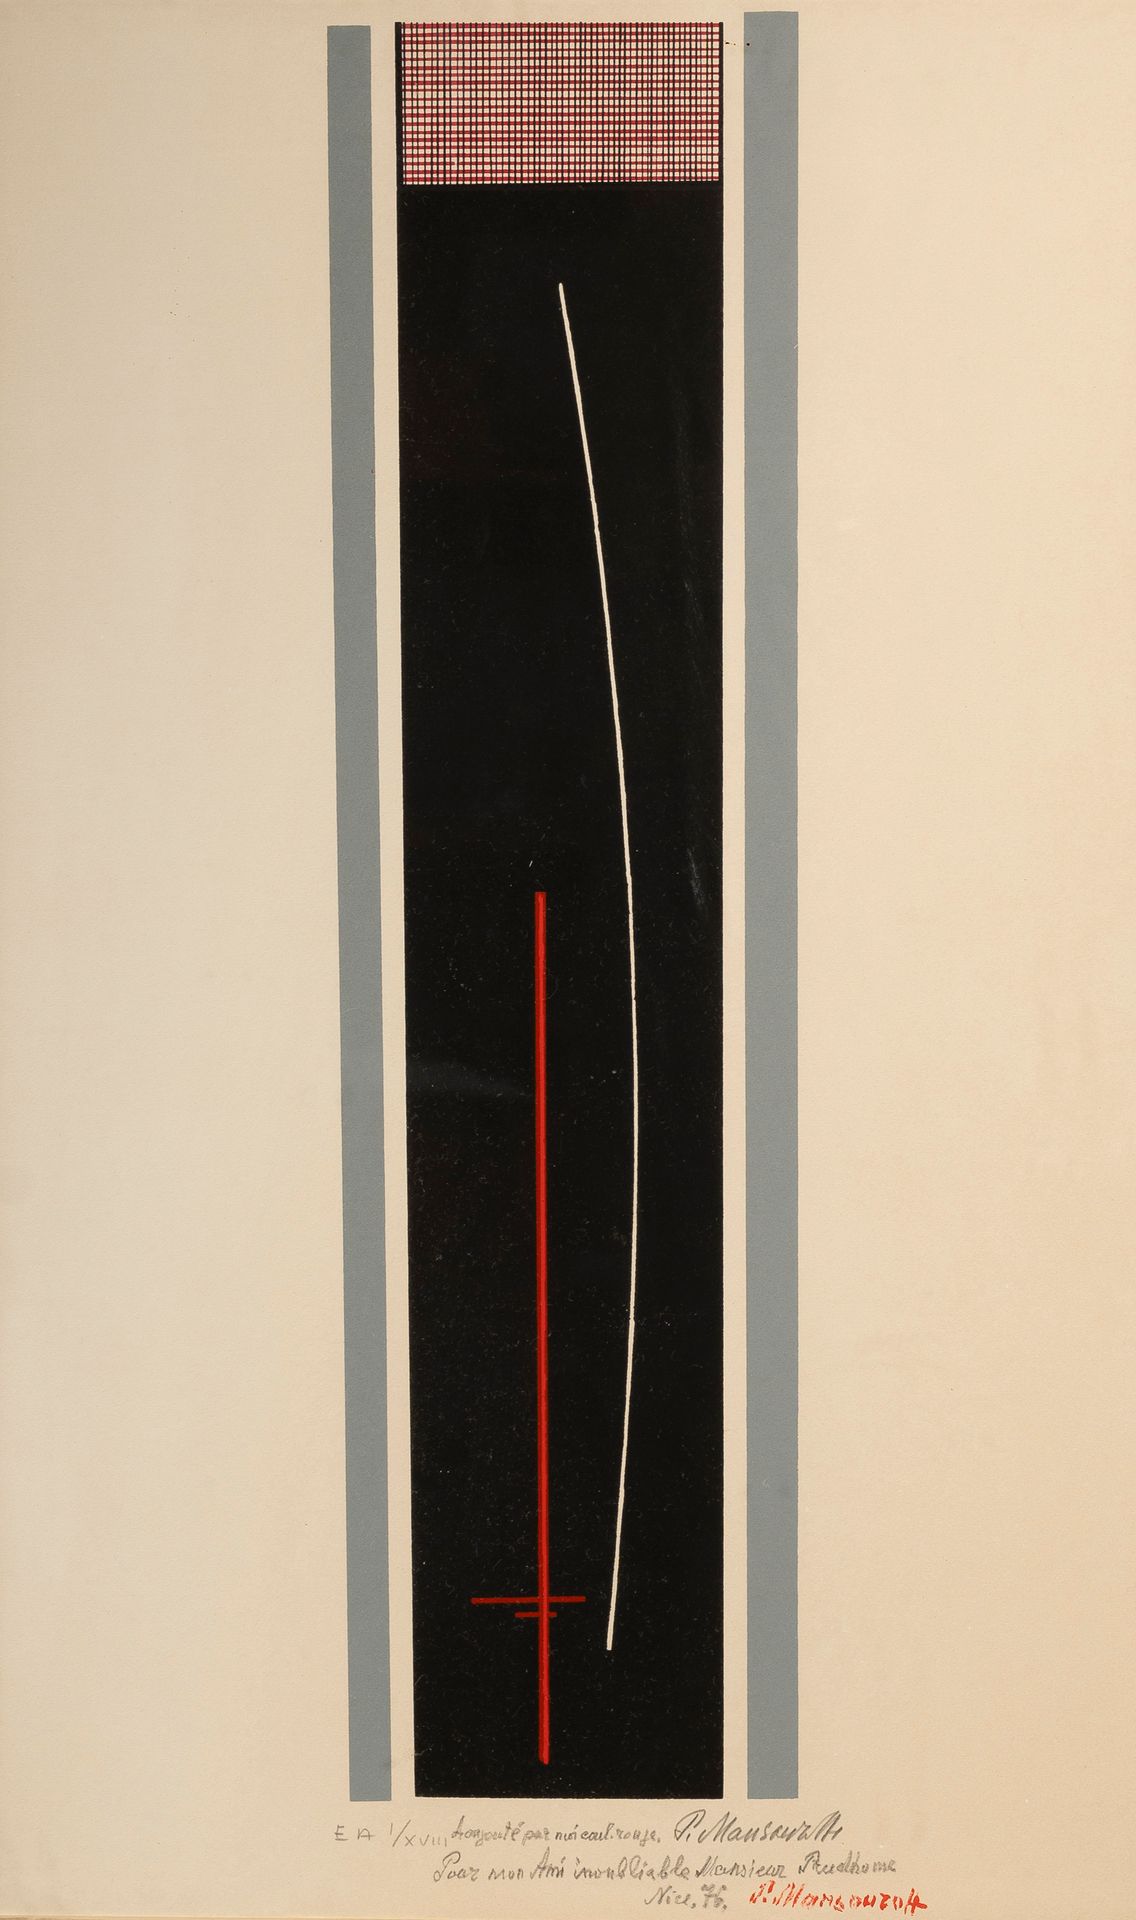 Null 帕维尔-安德烈耶维奇-曼苏罗夫(1896-1983)

构成

彩色石板画，被誉为 "艺术家的预演"，编号为1/18，已寄出，已签名，位于 "尼斯"，&hellip;